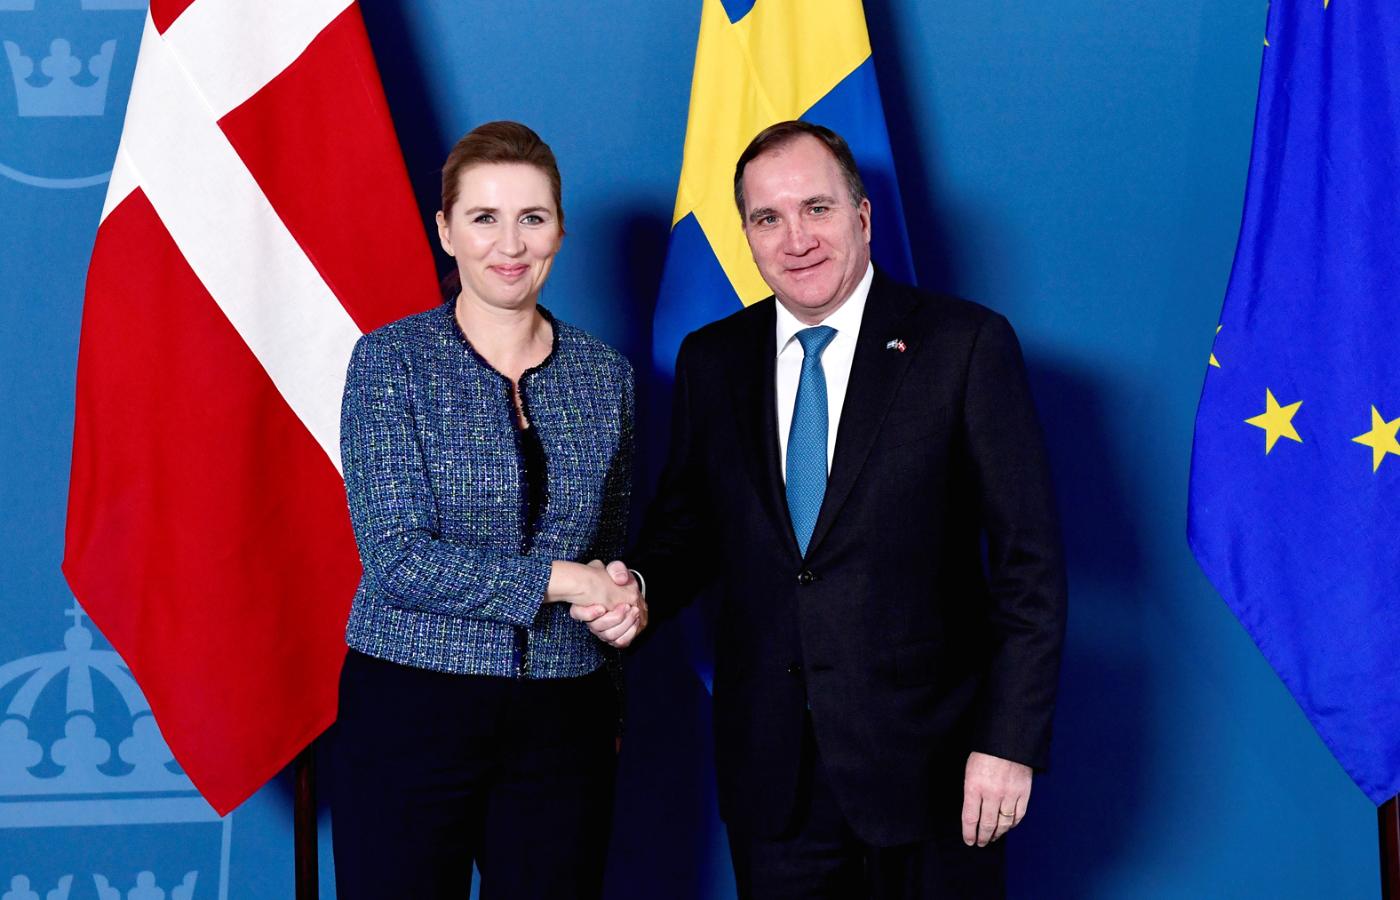 Duńska premier Mette Frederiksen i szwedzki premier Stefan Löfven ogłosili współpracę w zwalczaniu przestępczości.